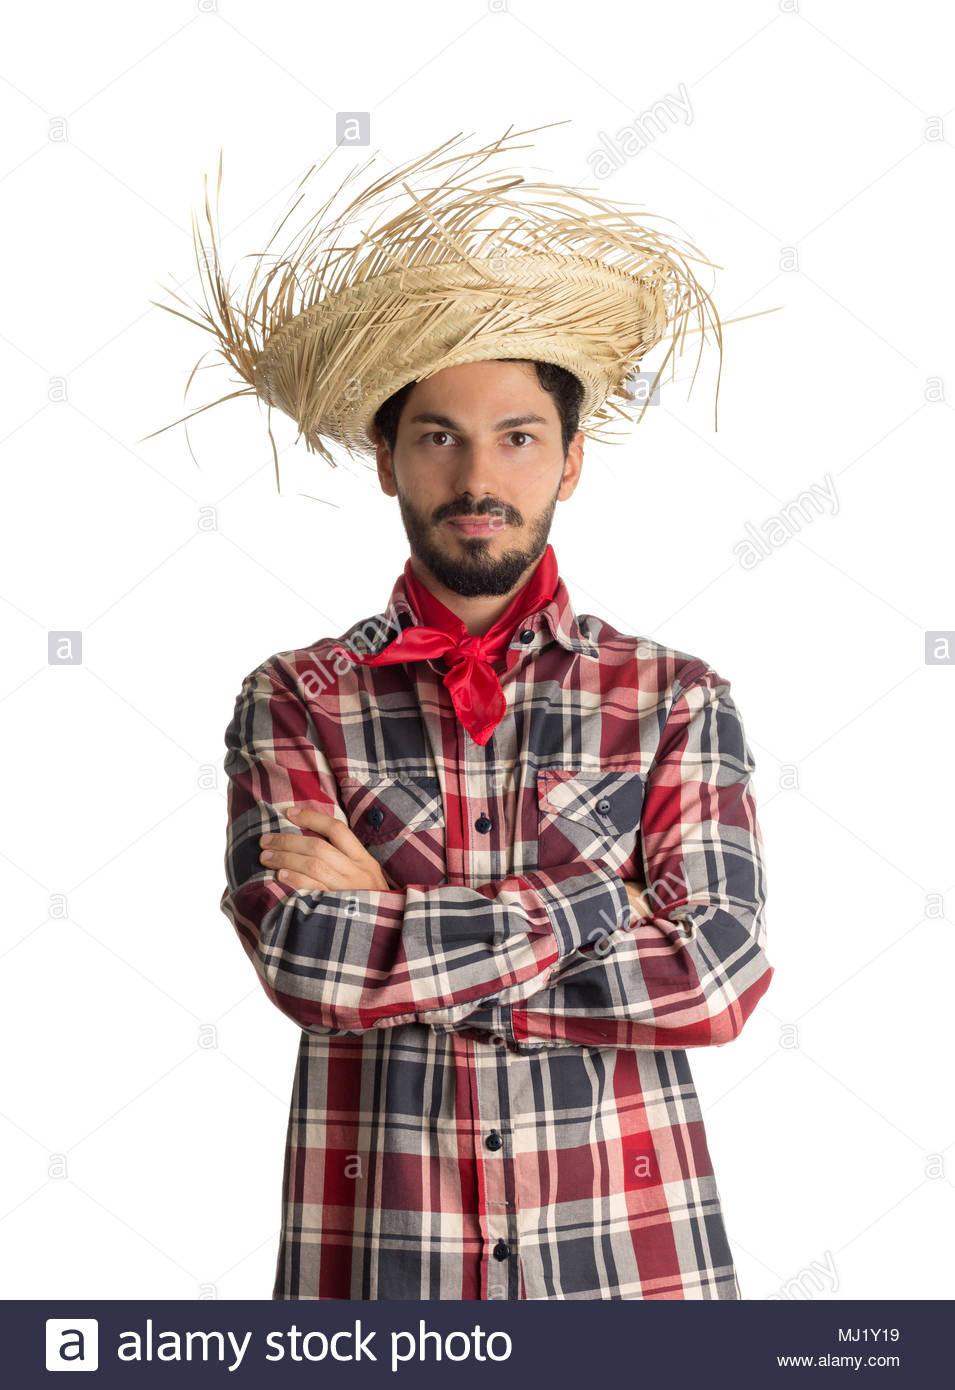 Festa Junina est un parti traditionnel brésilien a célébré en juin. Homme  portant chemise à carreaux (Rouge, noir, blanc) et chapeau de paille, le  costume comme Caipira. Arms Photo Stock - Alamy